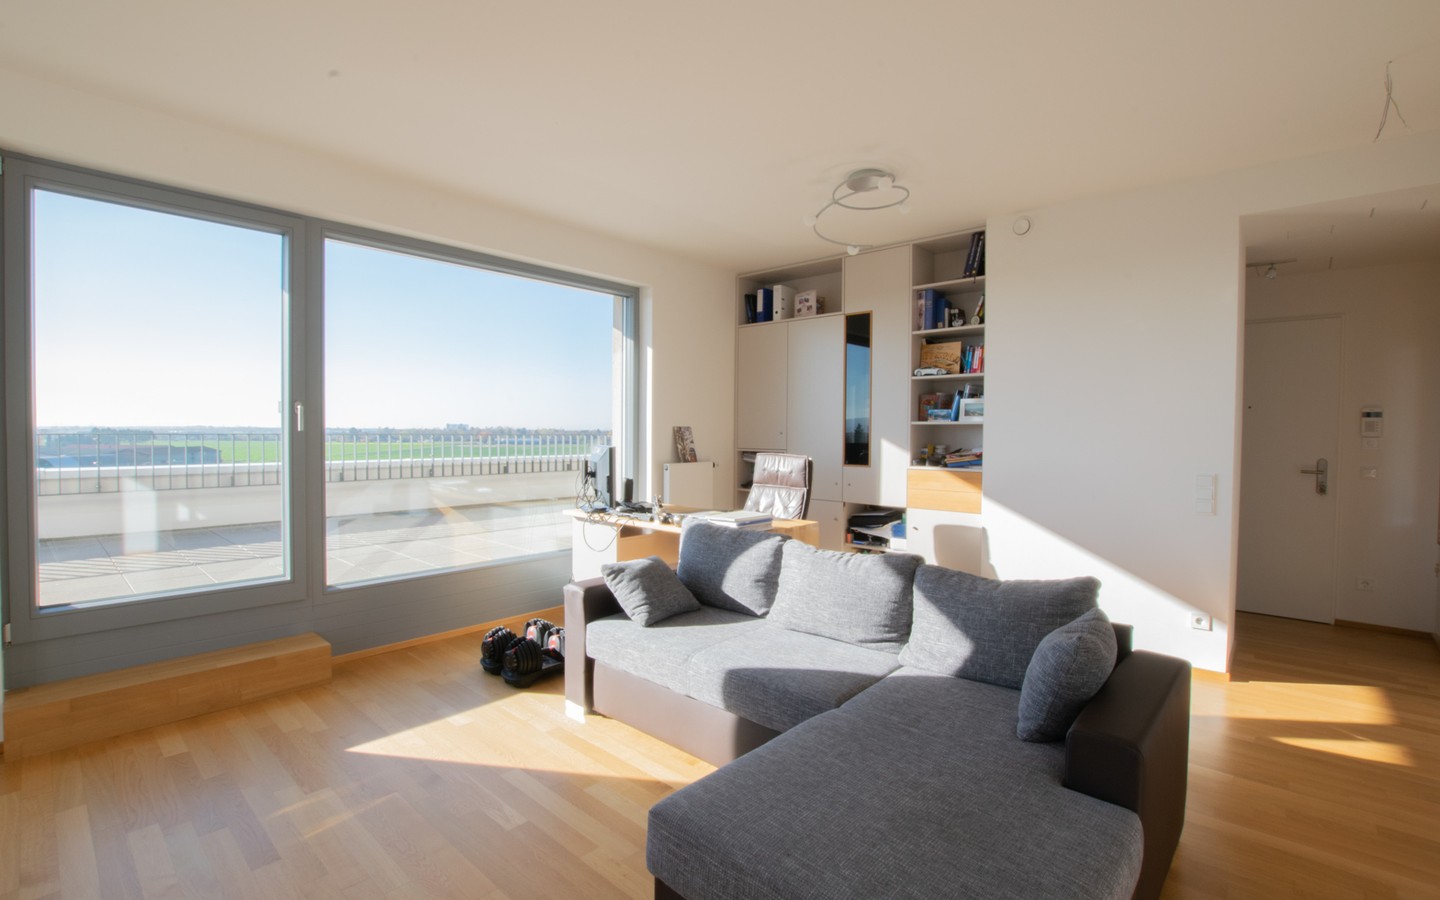 Wohnzimmer - Mit phänomenalem Panorama-Blick: Attraktive Penthouse-Wohnung an der Bahnstadt-Promenade